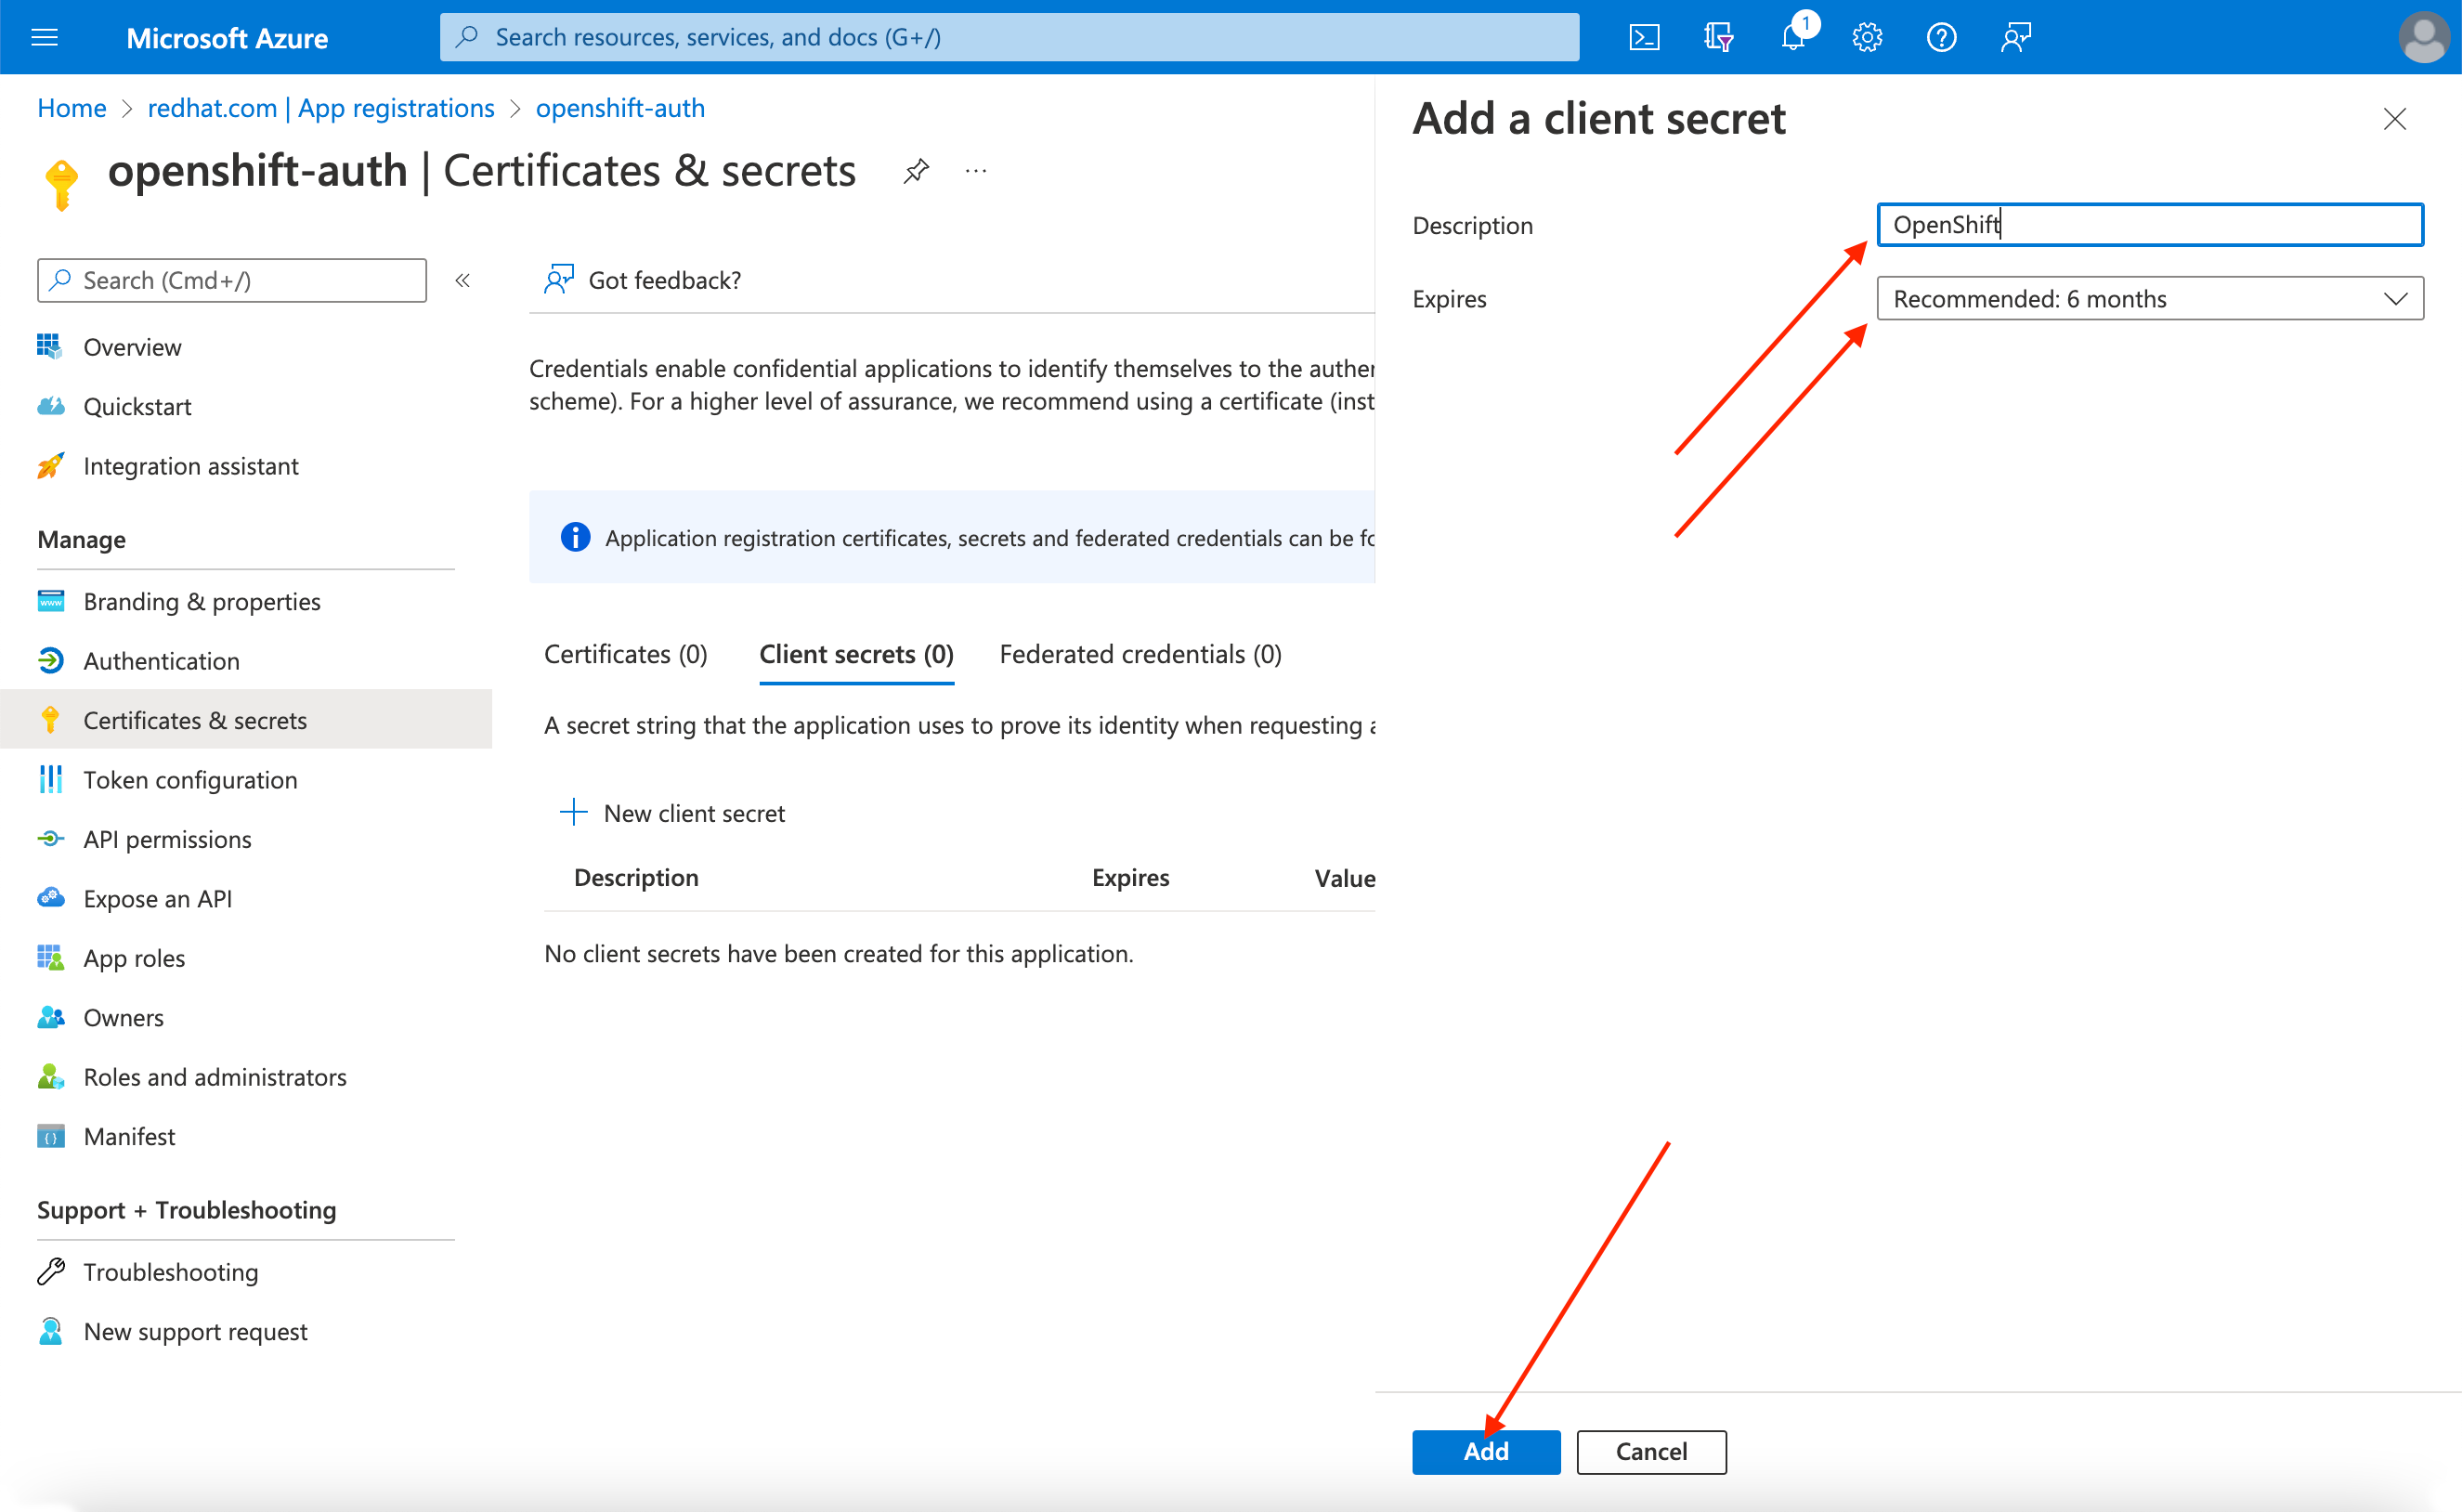 Azure Portal - Add a Client Secret page